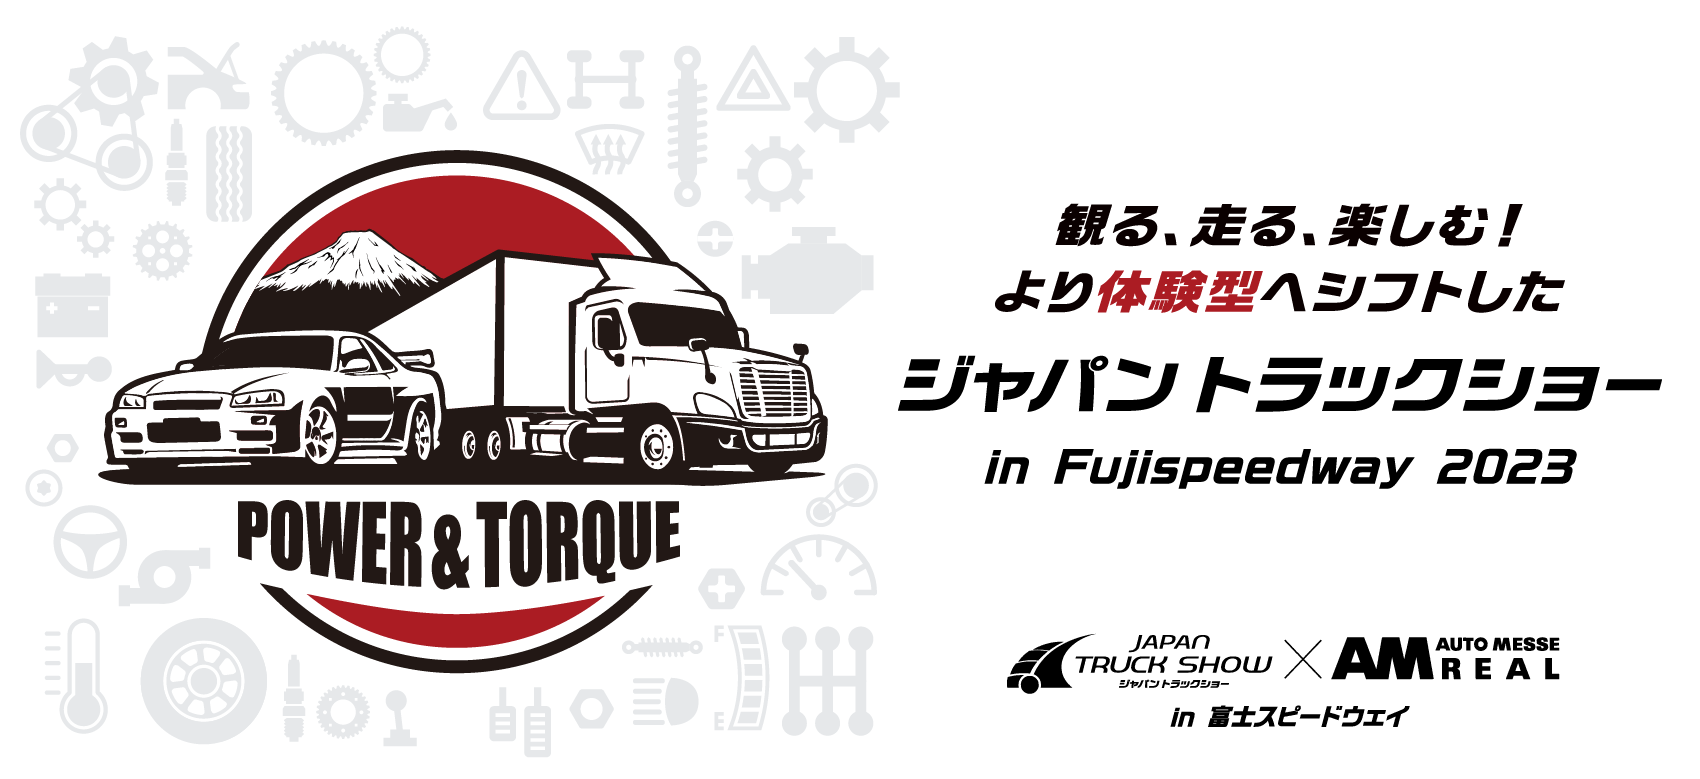 イベント情報】「ジャパントラックショー in Fujispeedway 2023」10/29(日) | KCV-PARTS | 輸入トラック (スカニア、ボルボ、ベンツ)部品・アクセサリーの輸入/販売